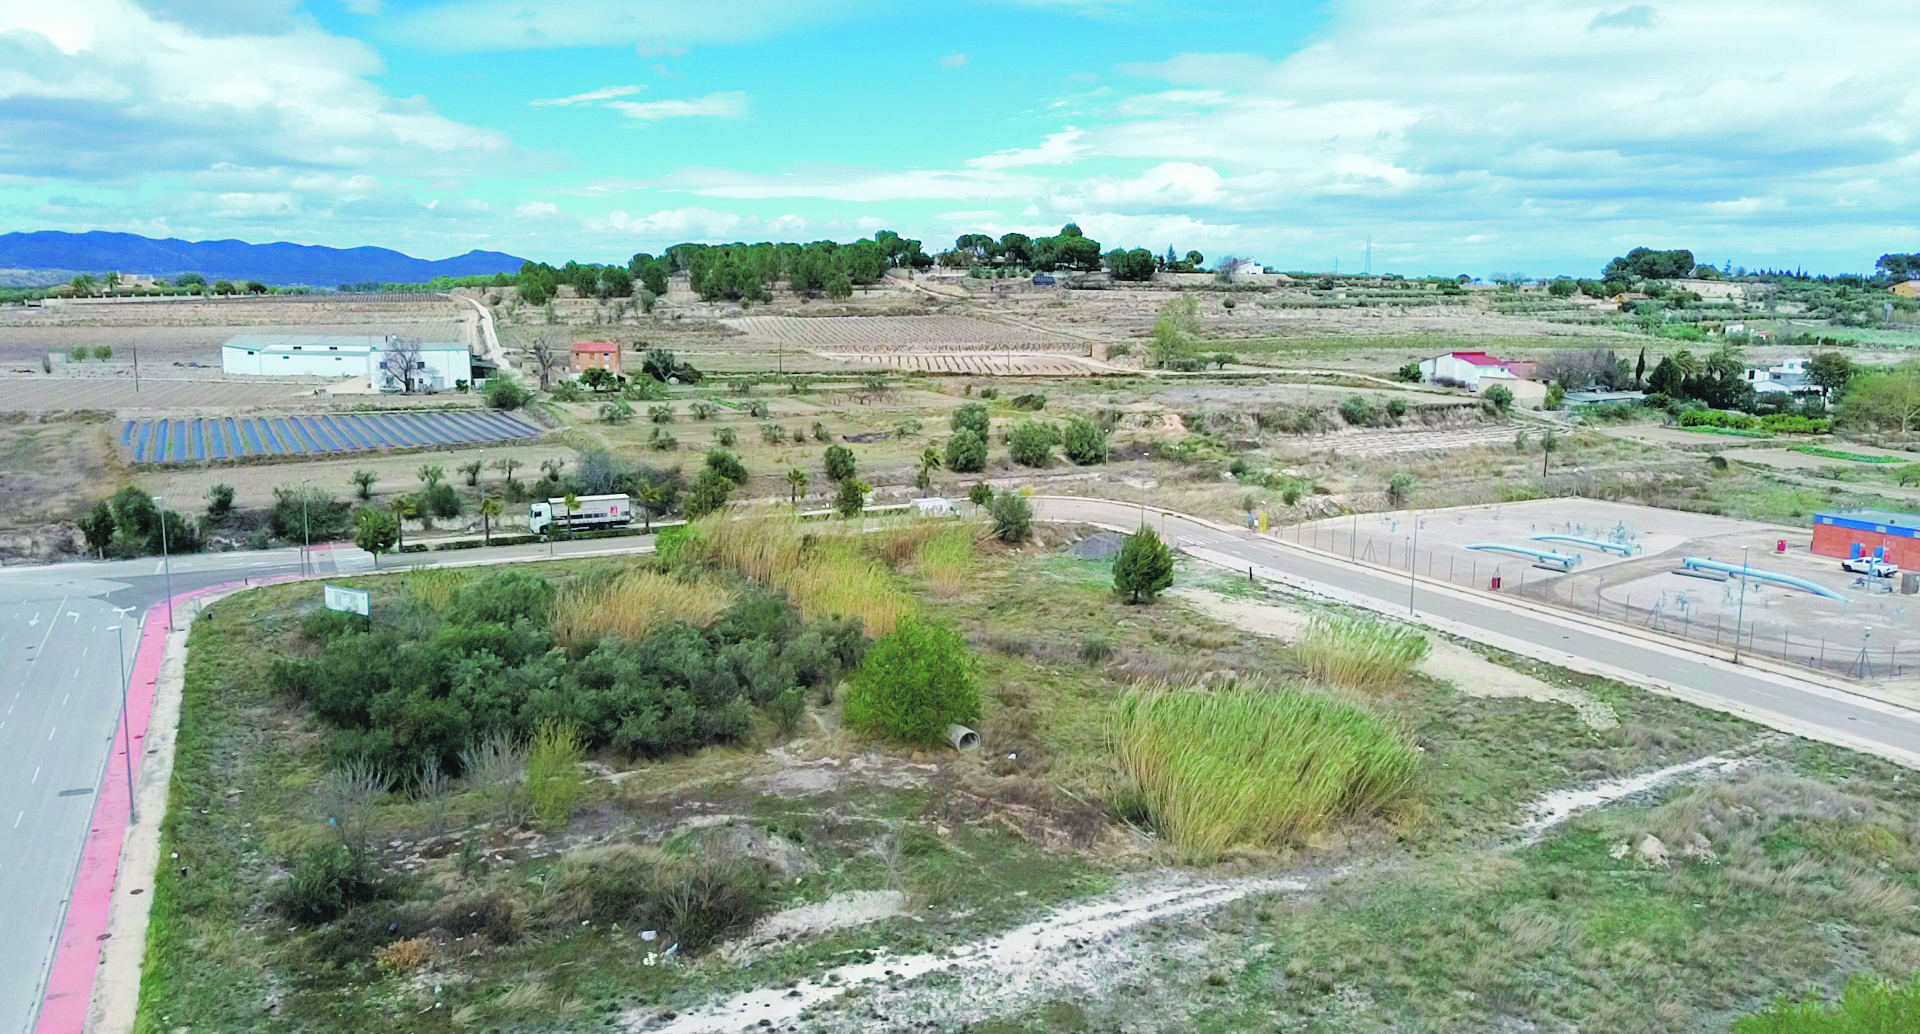 Un macroprojecte per dotar de sòl industrial a Ontinyent El Periòdic d'Ontinyent - Noticies a Ontinyent